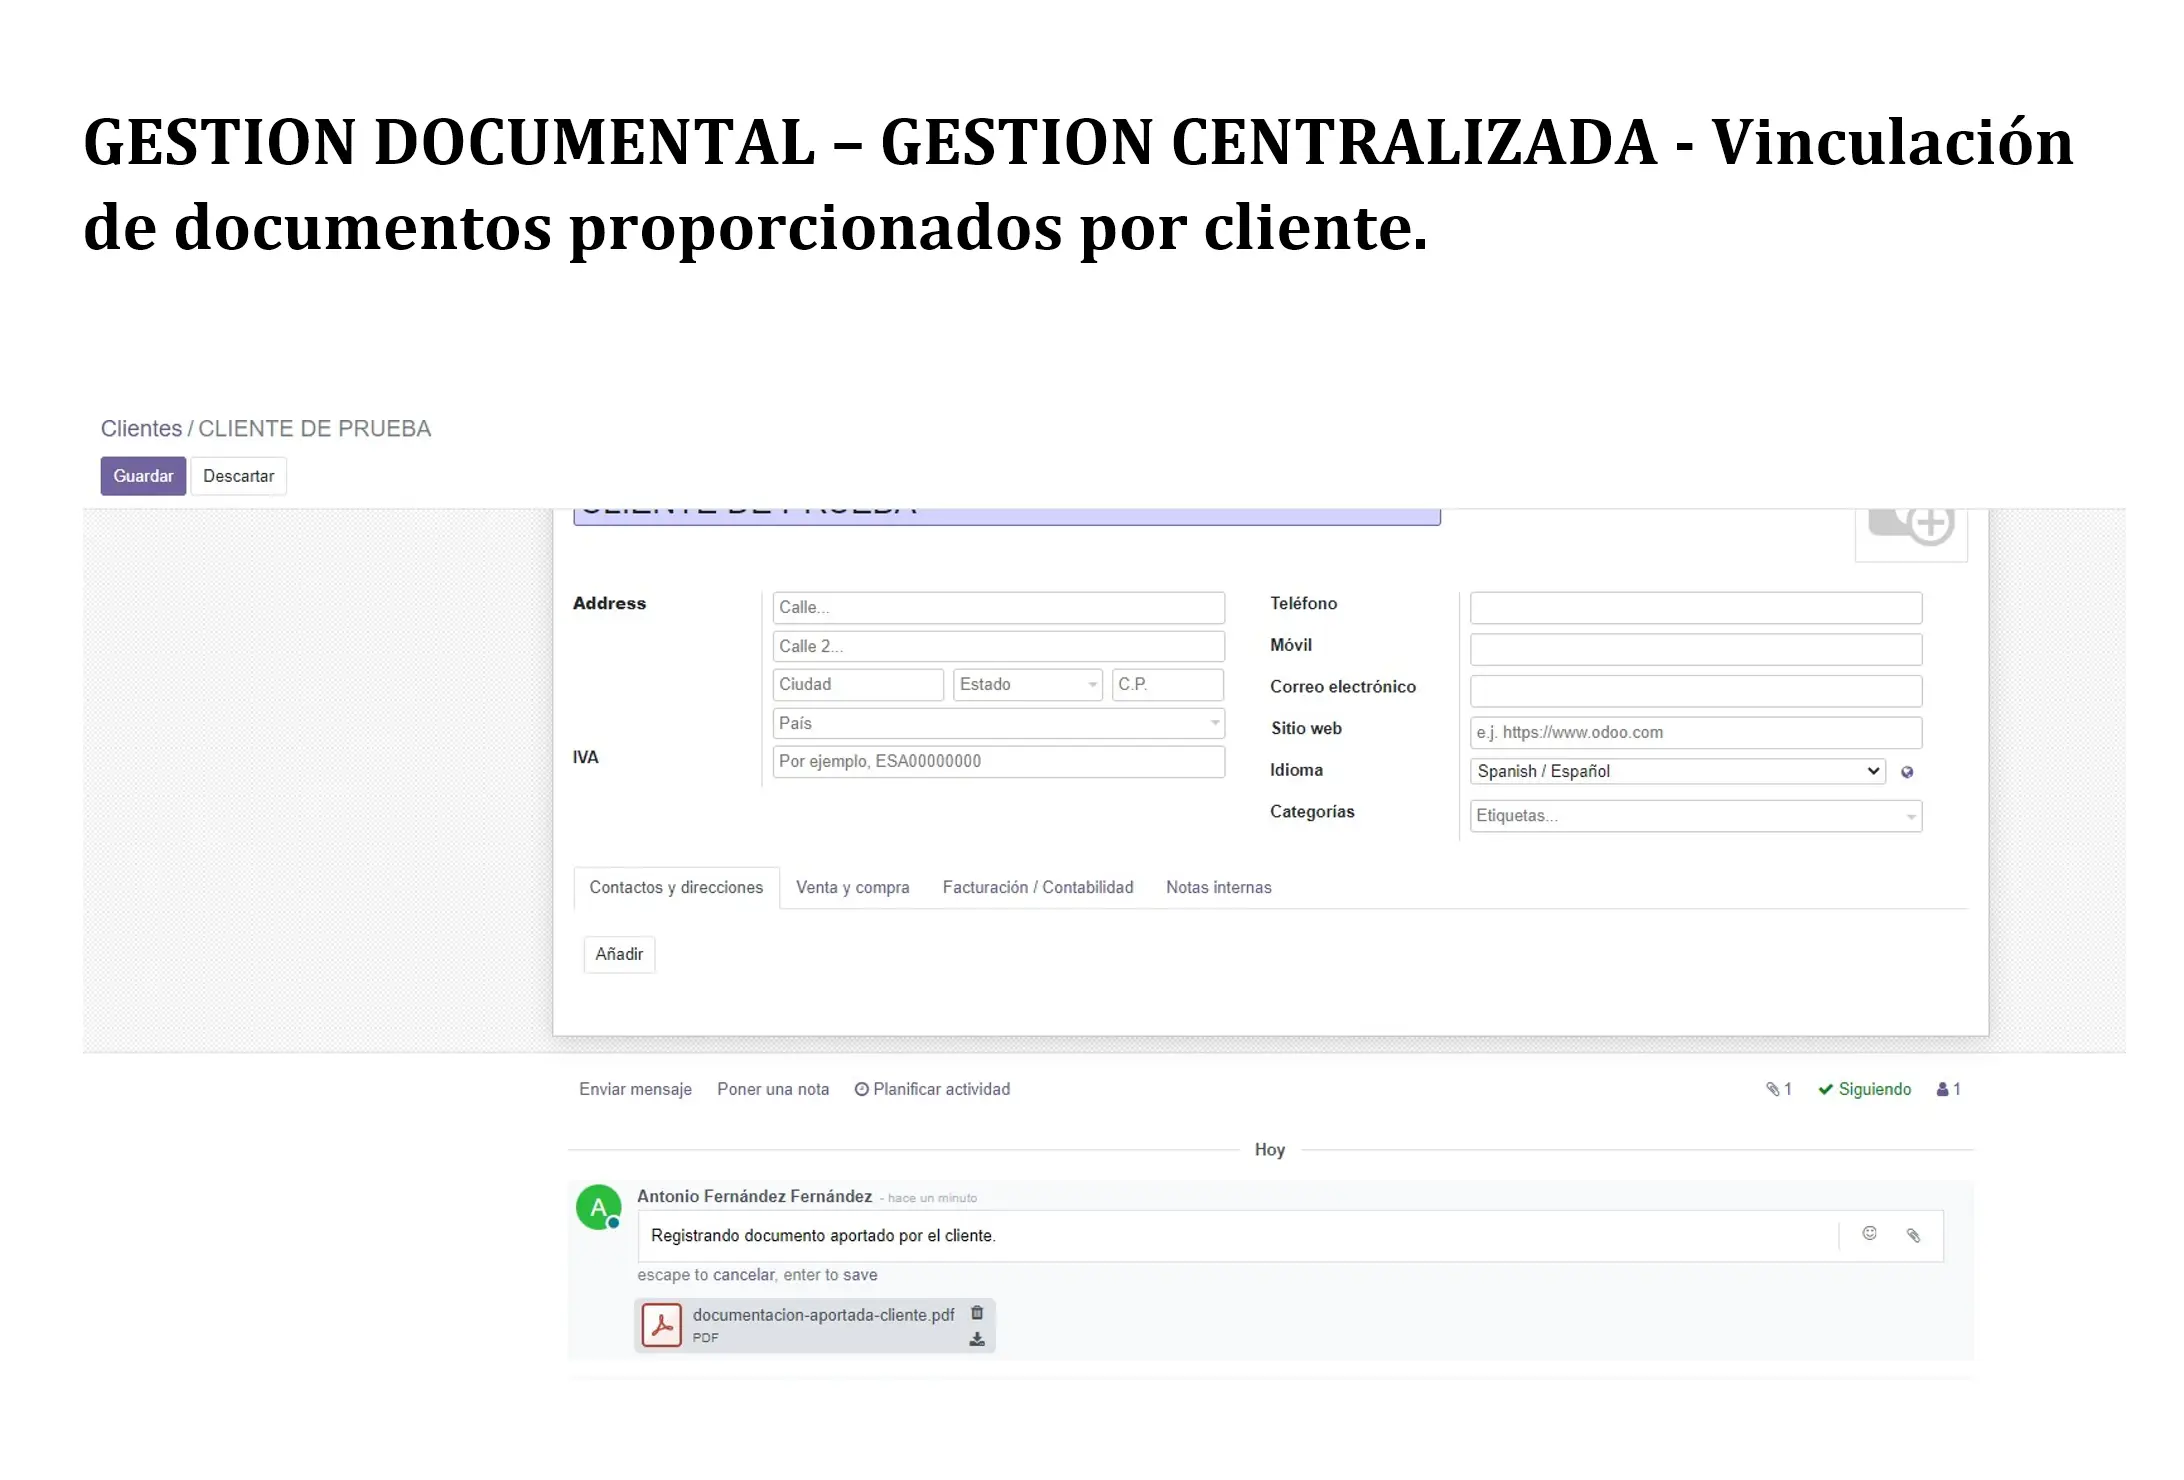 Gestión domental: Vinculación de documentos proporcionados por el cliente   